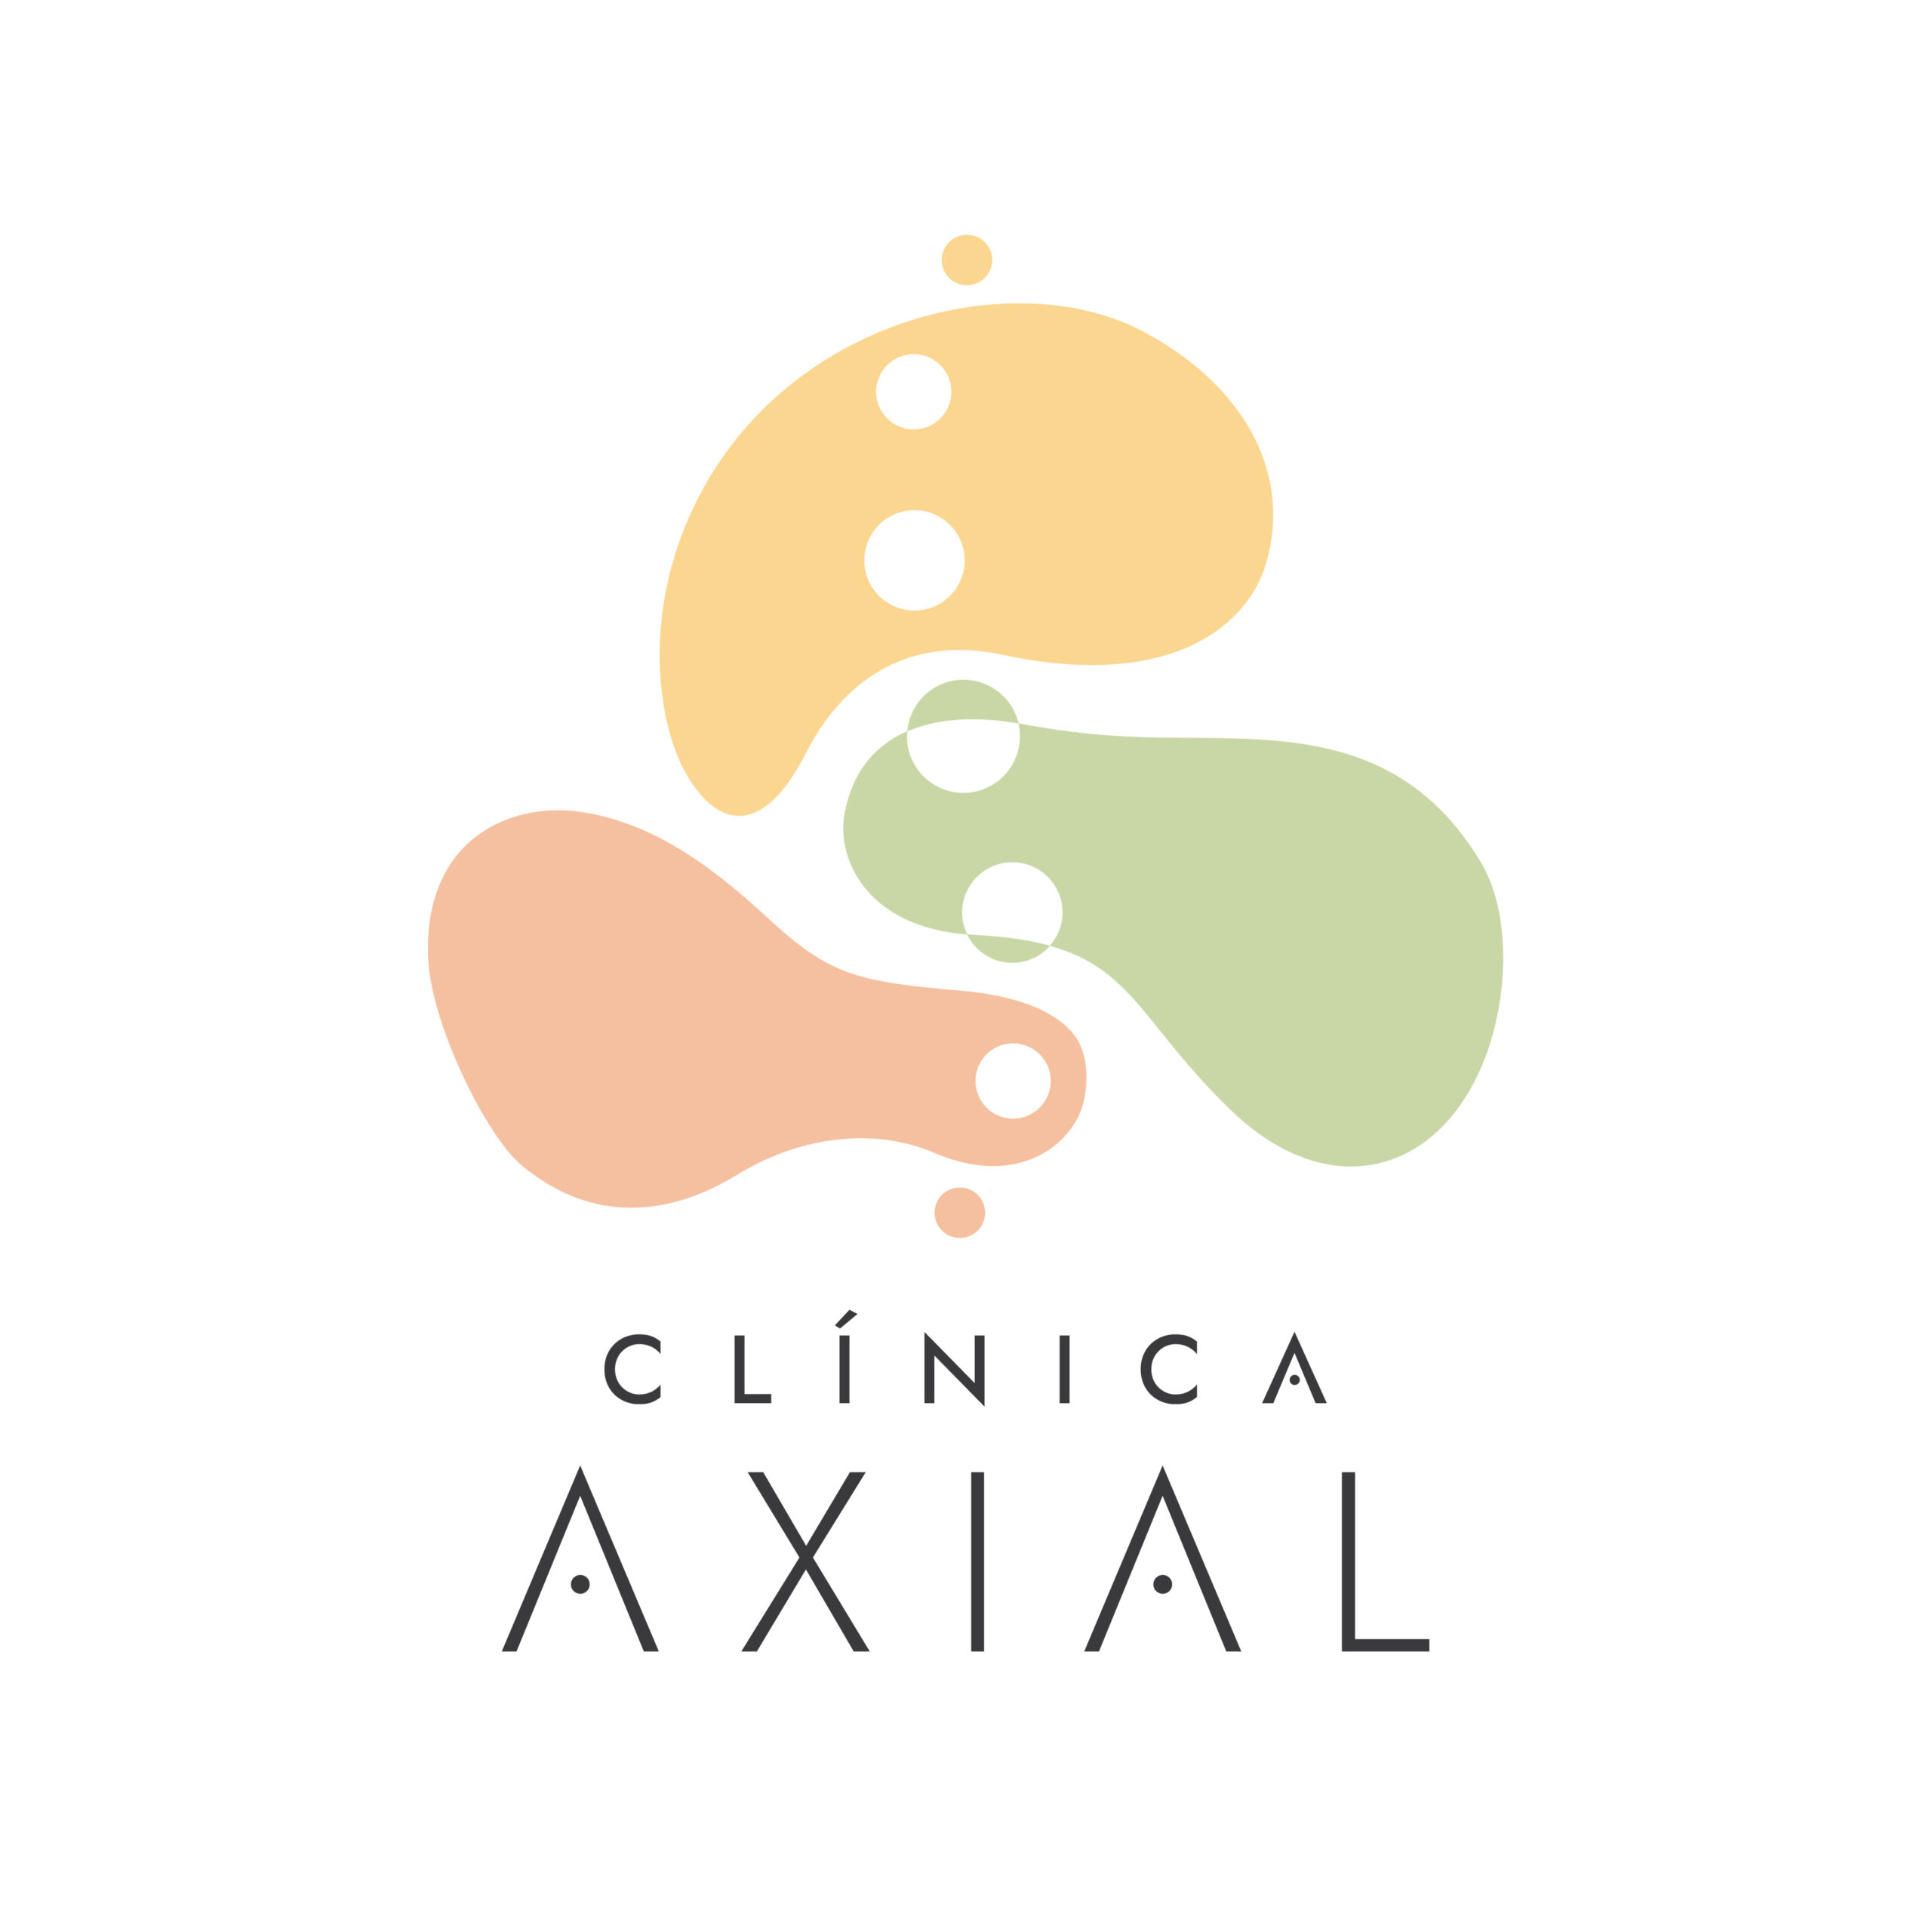 Clínica Axial. Centro de Fisioterapia, Psicología y Nutrición